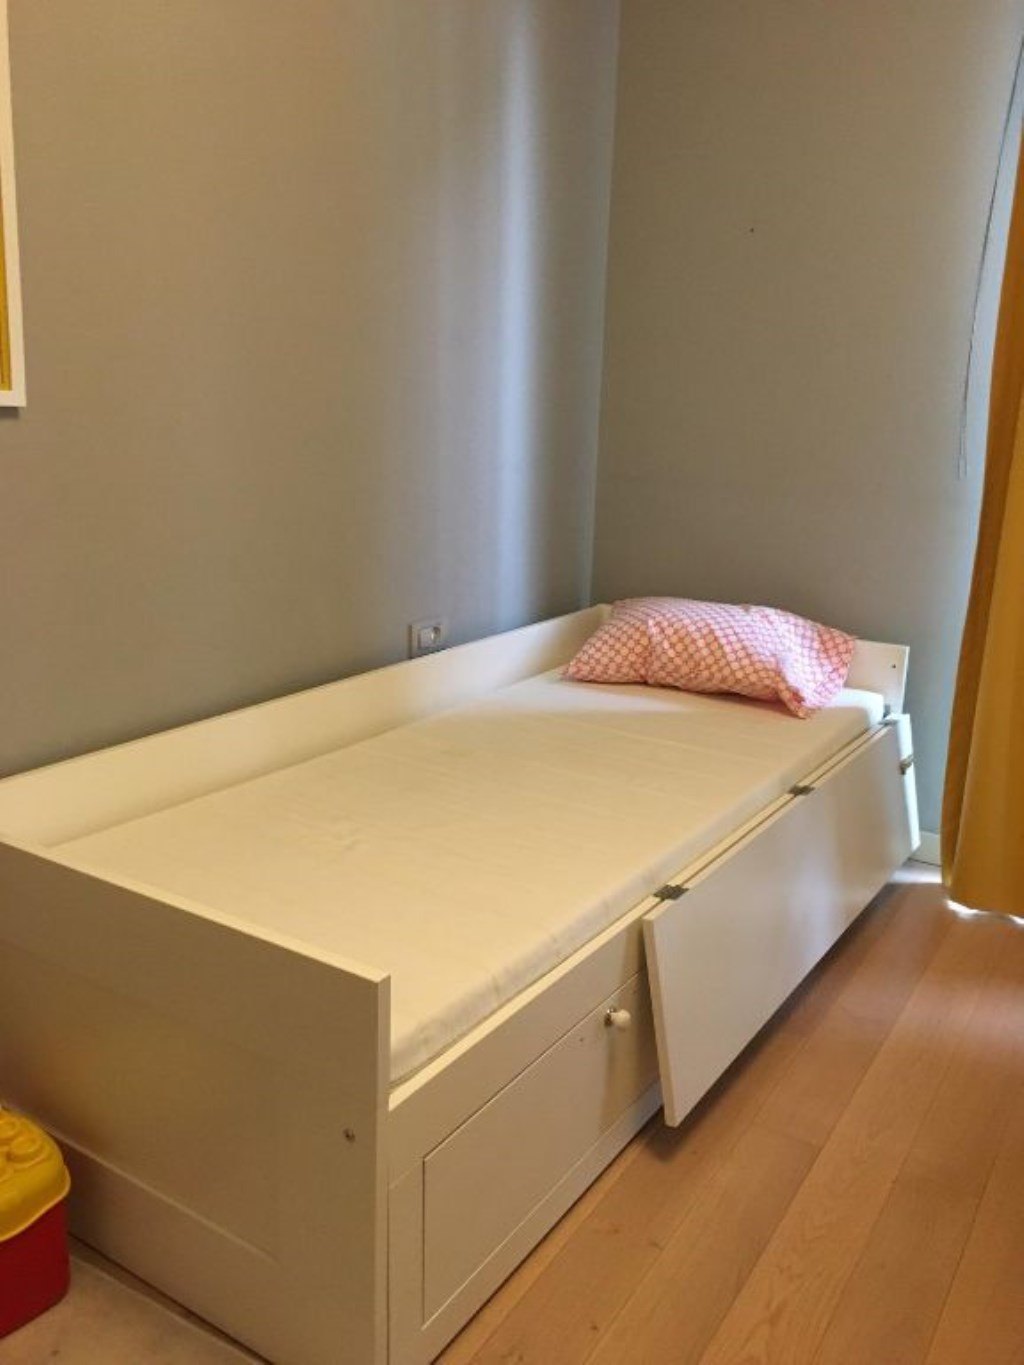 кровать бримнэс в интерьере детской